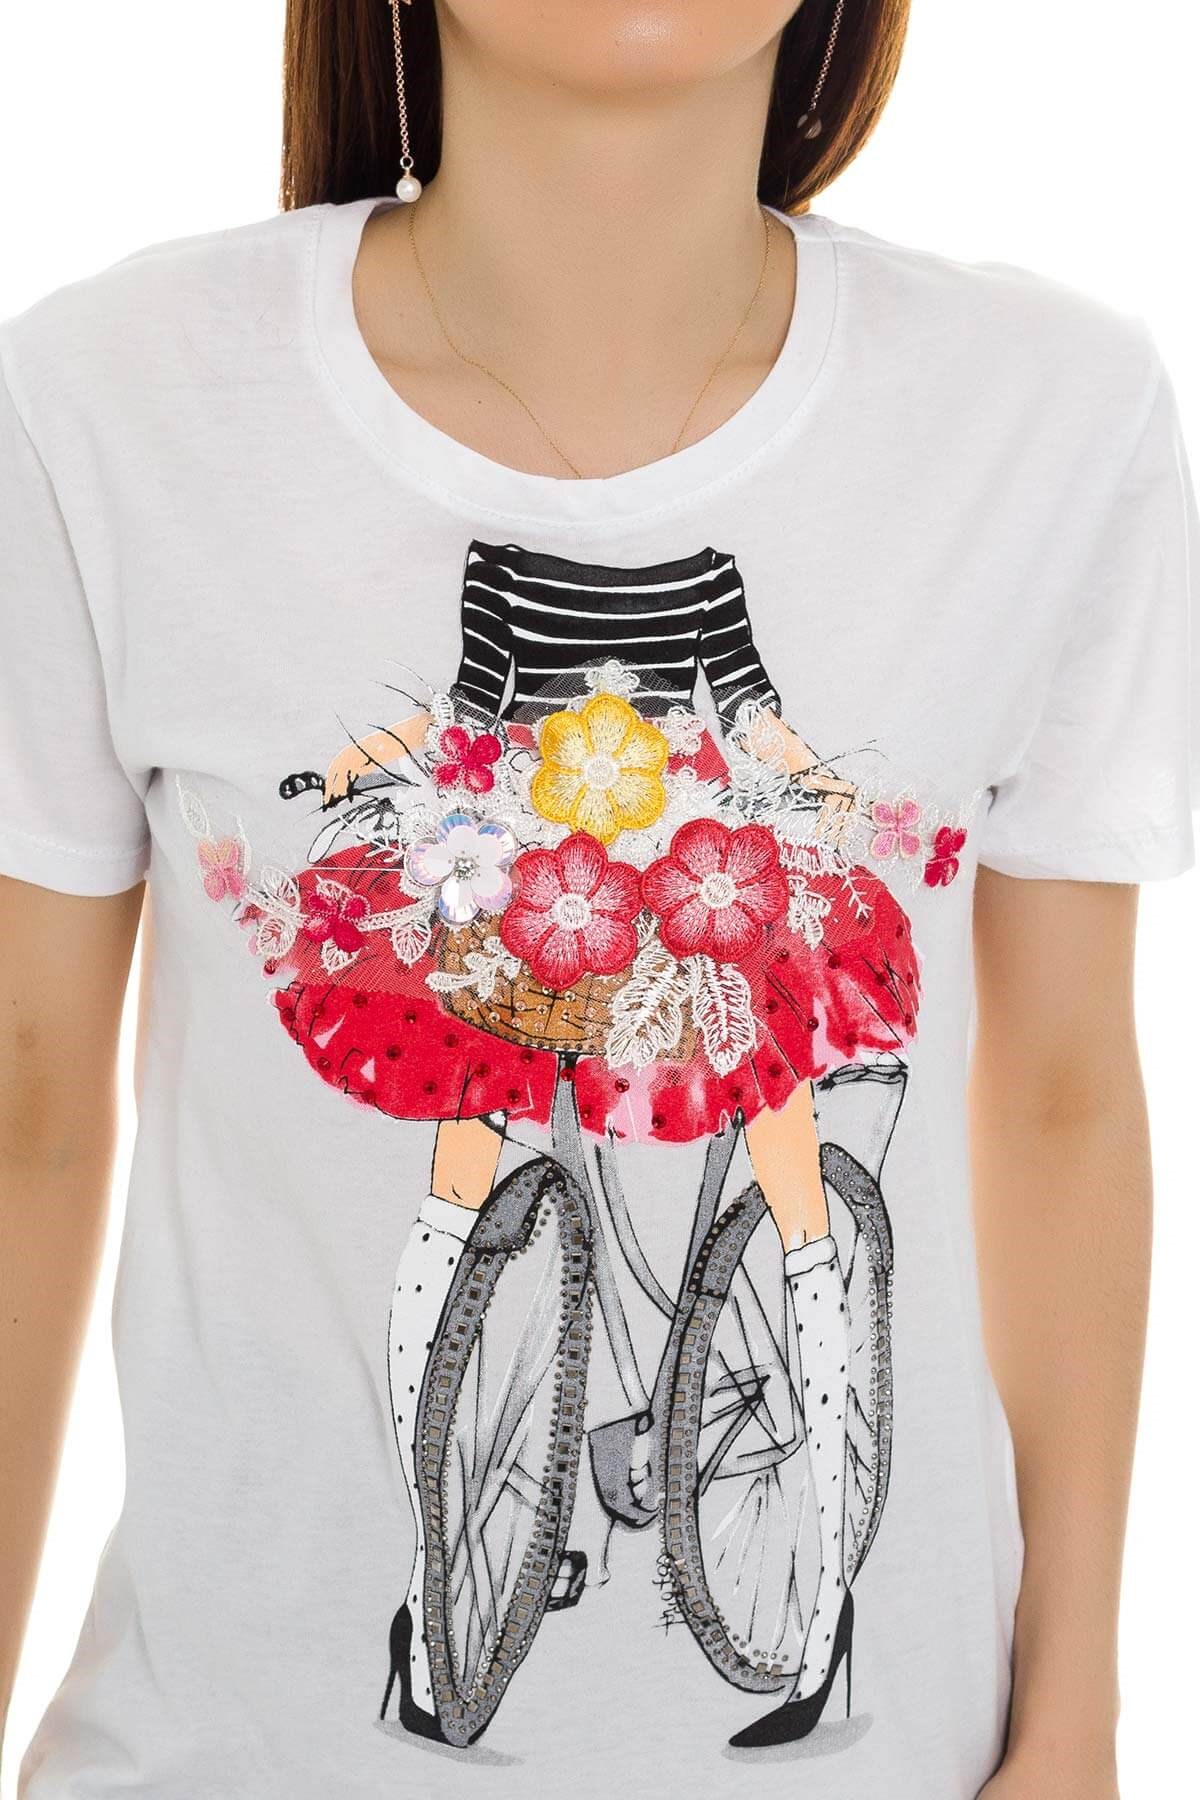 Bisiklet ve Çiçek Desenli Kadın T-Shirt